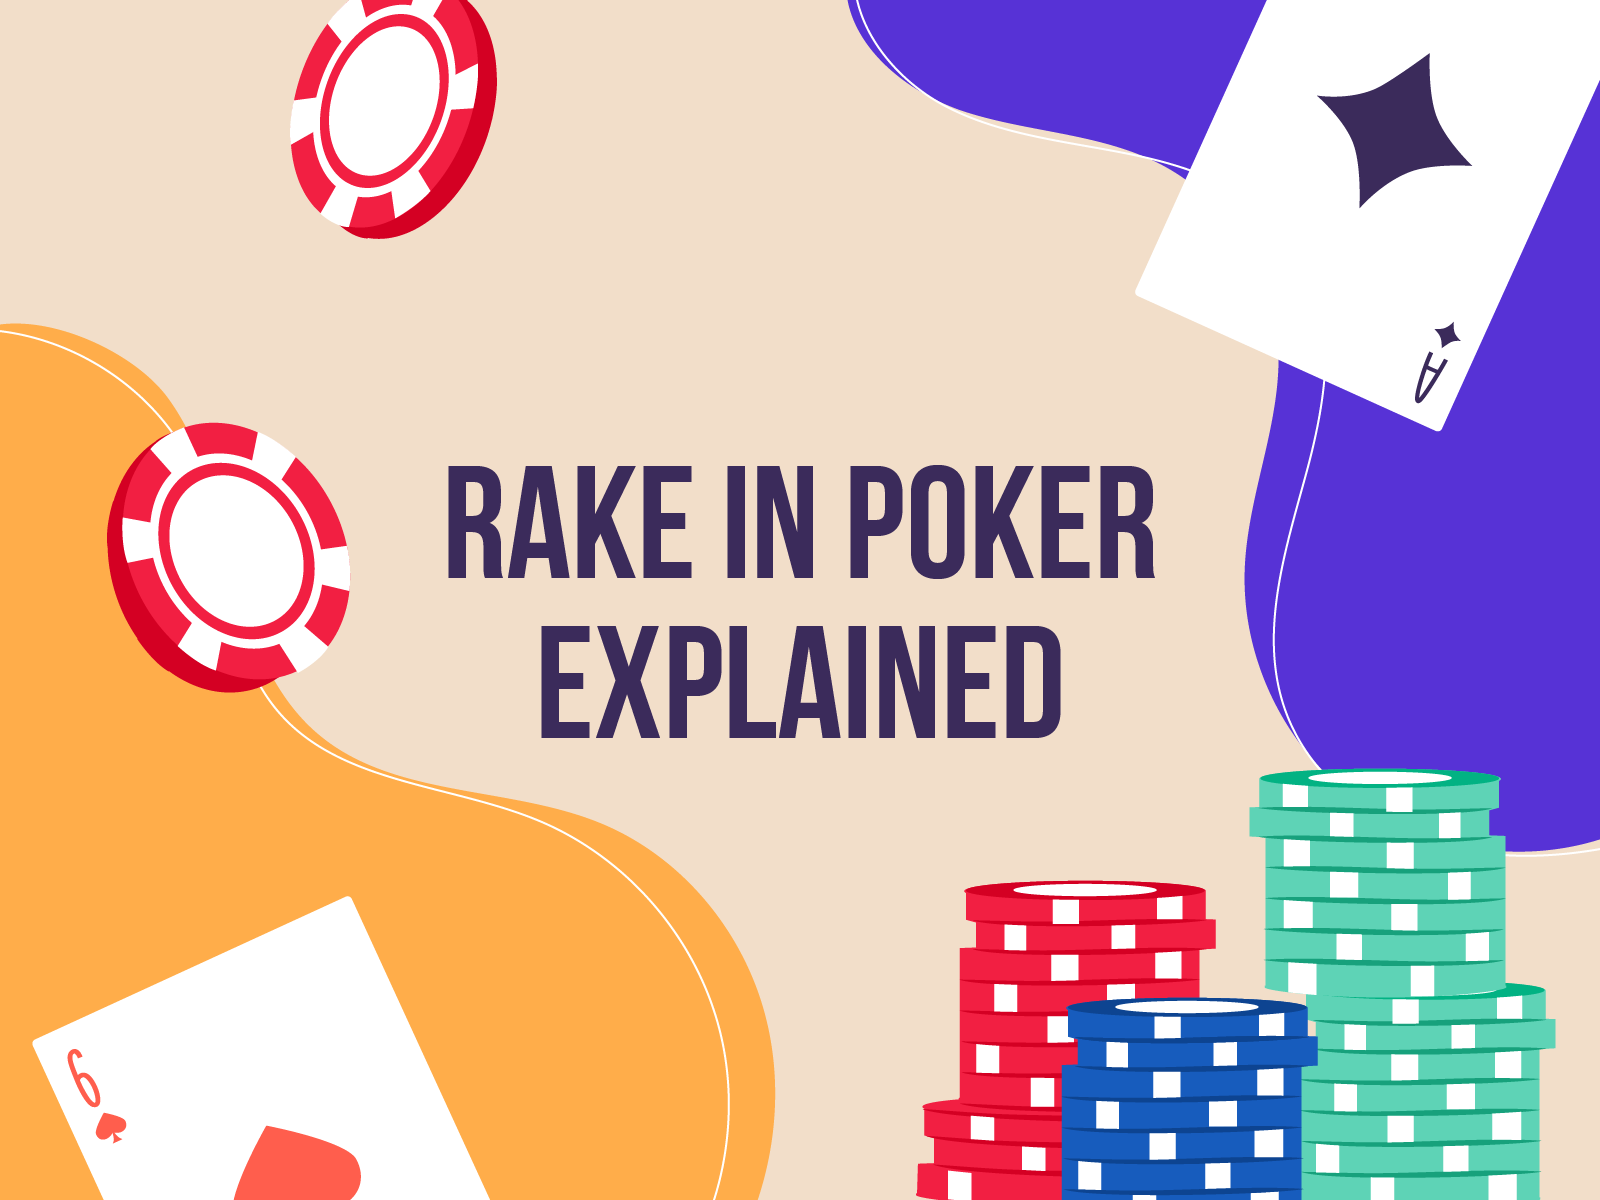 commerce casino poker rakes